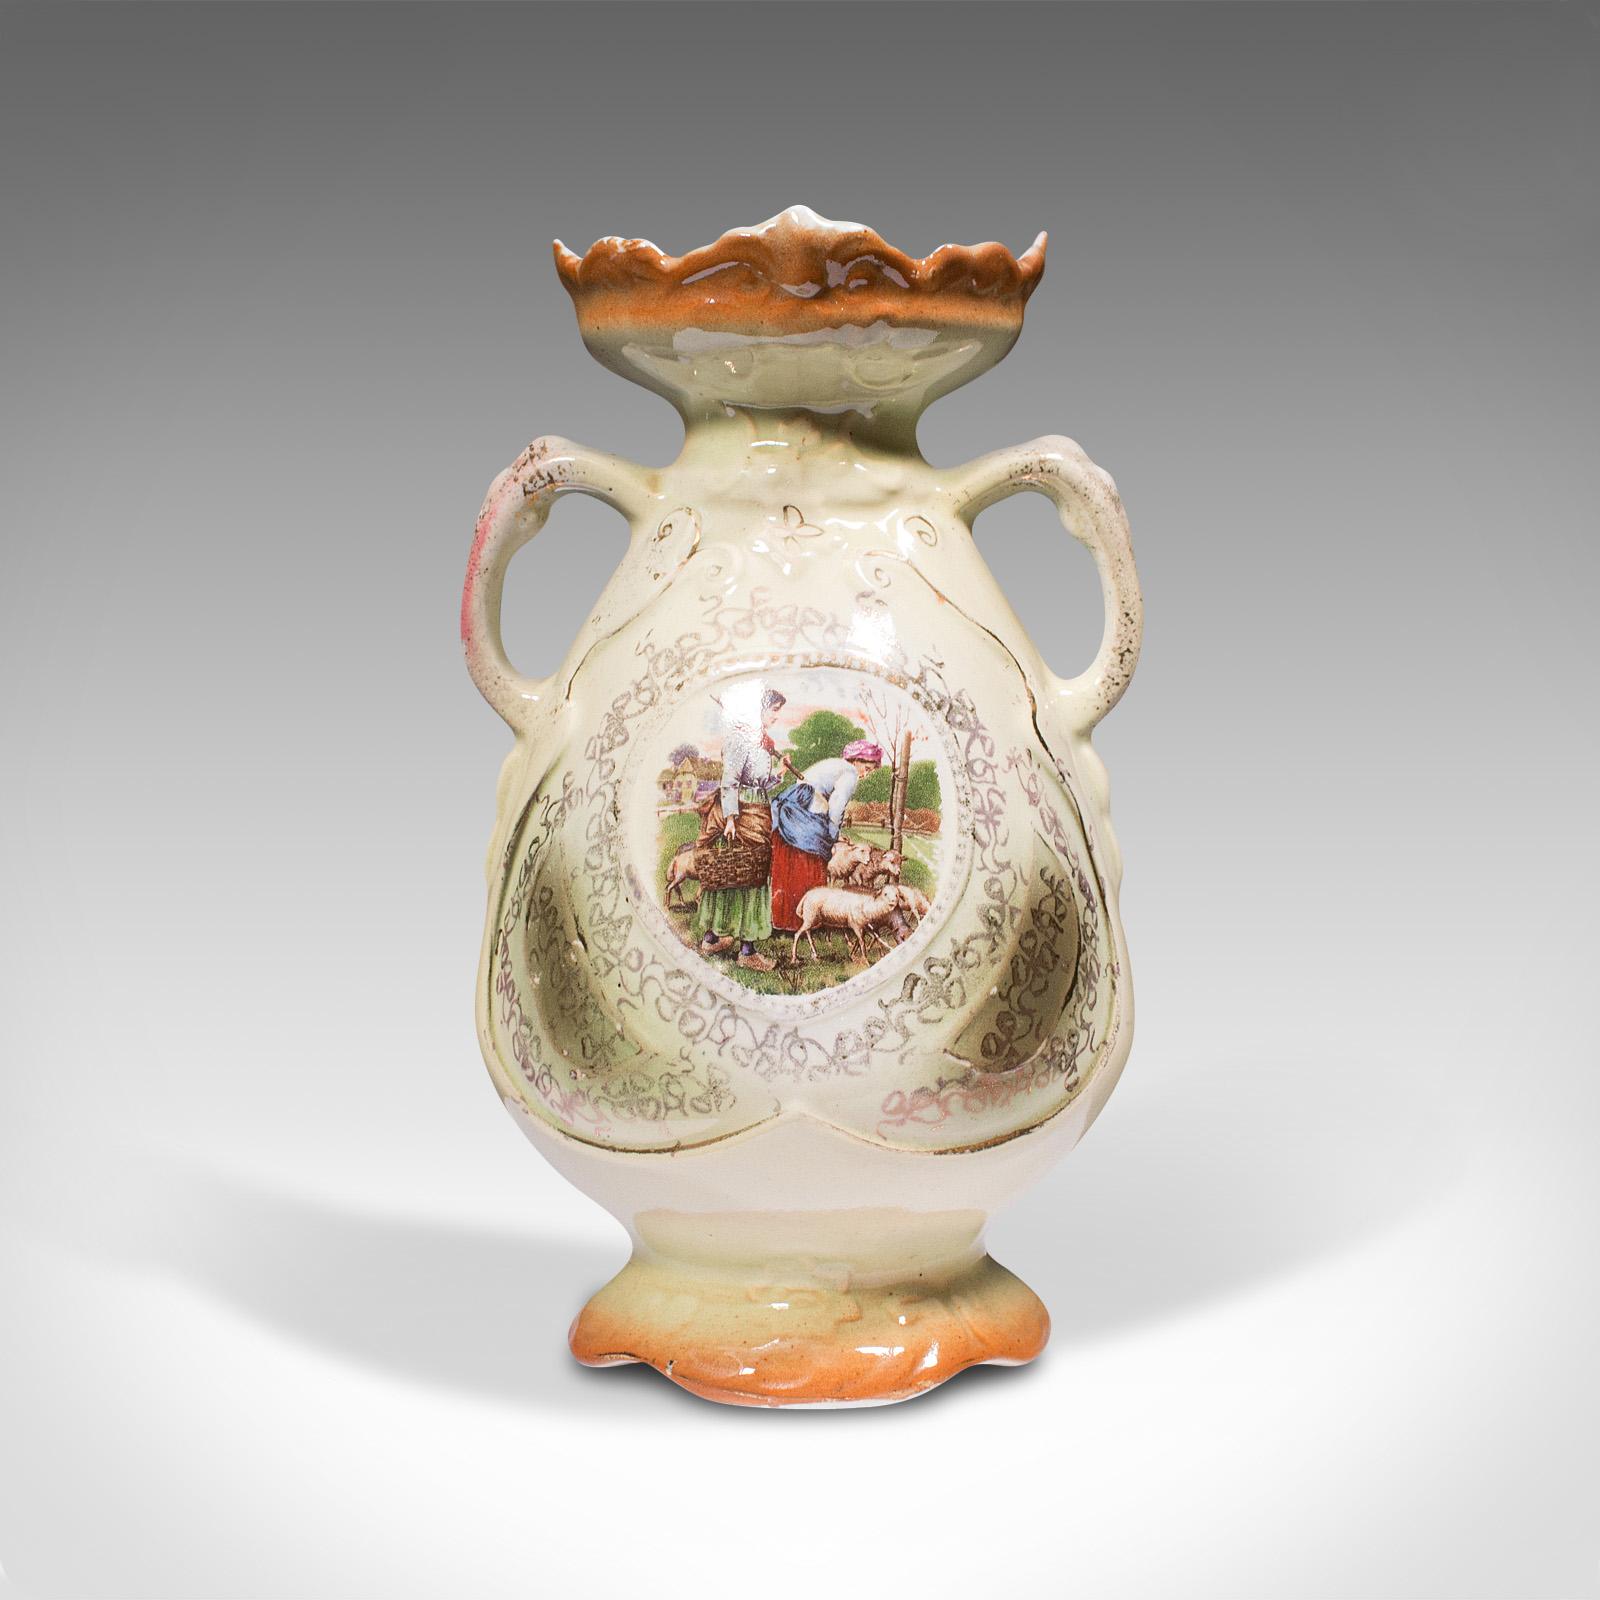 Il s'agit d'un petit vase d'exposition vintage. Un balustre décoratif anglais en céramique, datant du début du 20e siècle, vers 1930.

Petit vase à l'attrait charmant
Présente une patine d'usage désirable et en bon état
Fond peint crème clair,